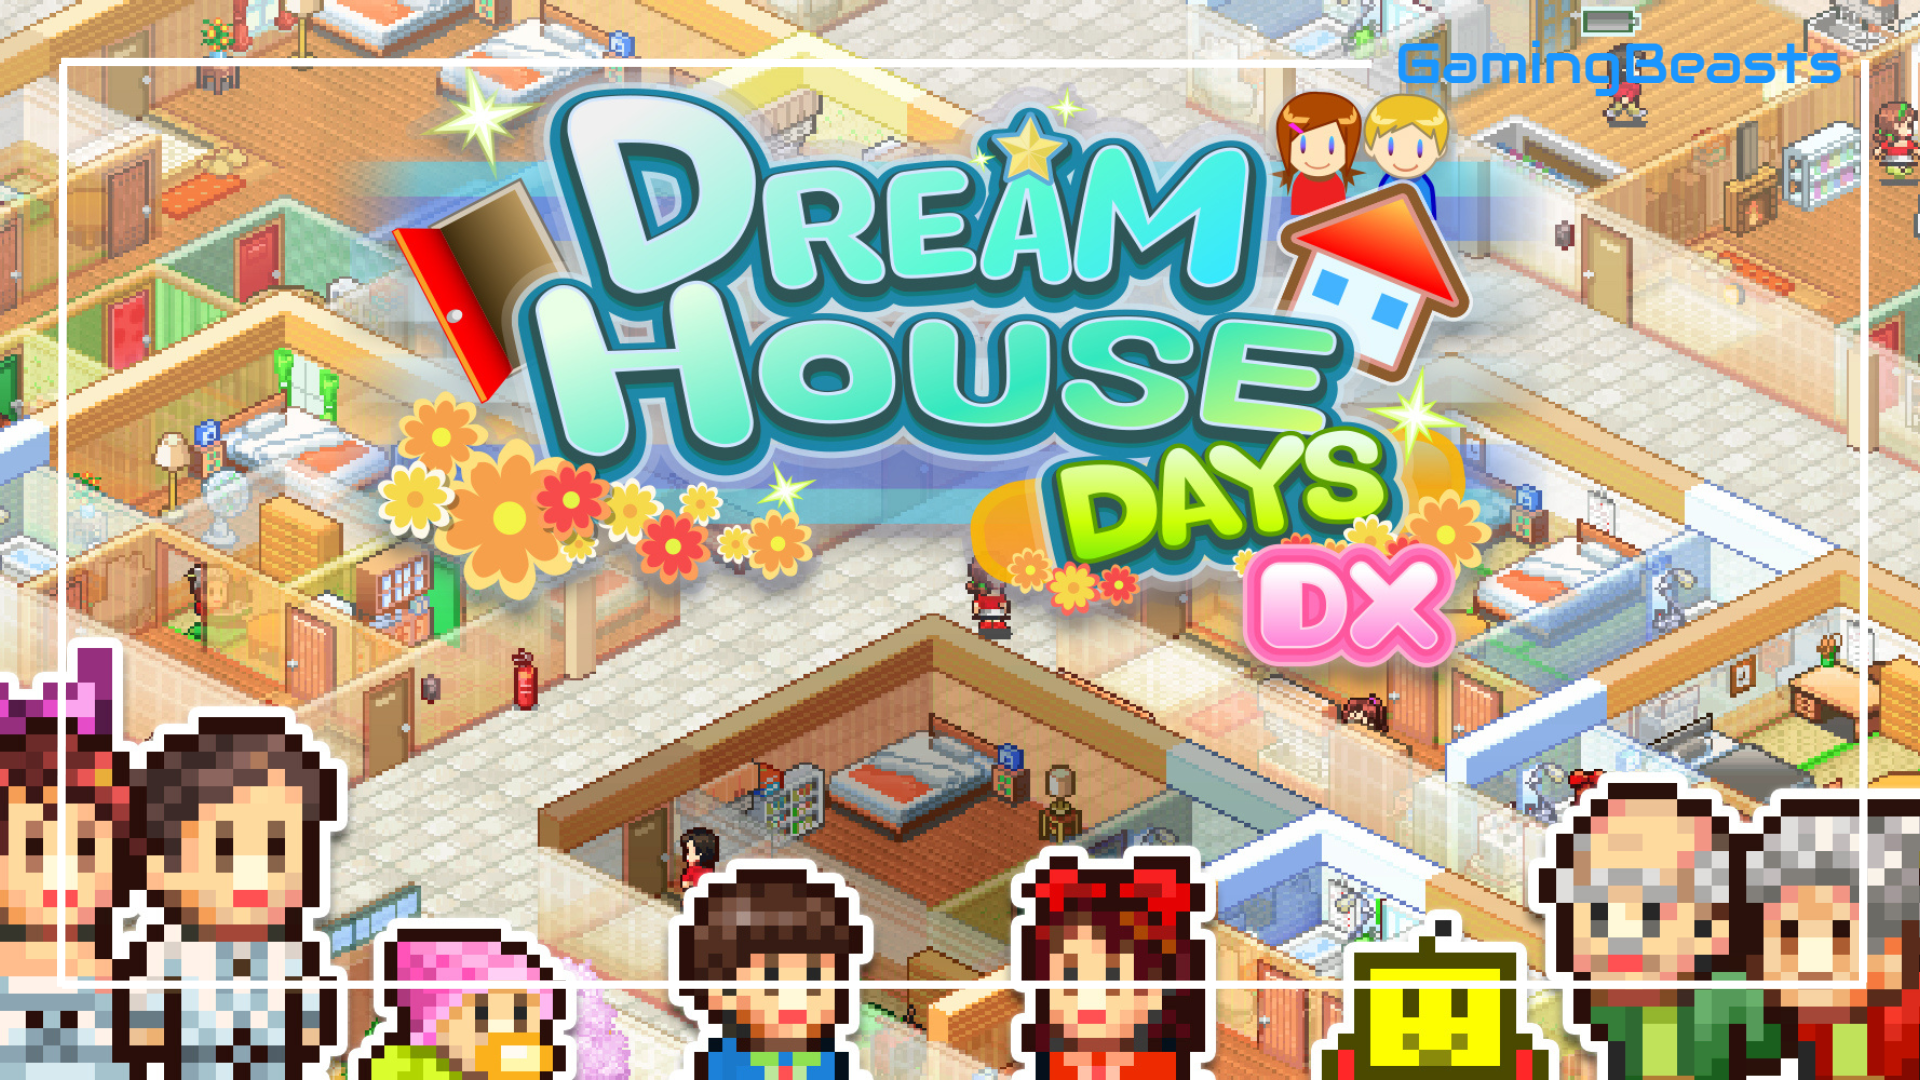 Dream house 2. Dream House Days. Dream House Days комнаты. Dream House Days 6.0. Dream DX.